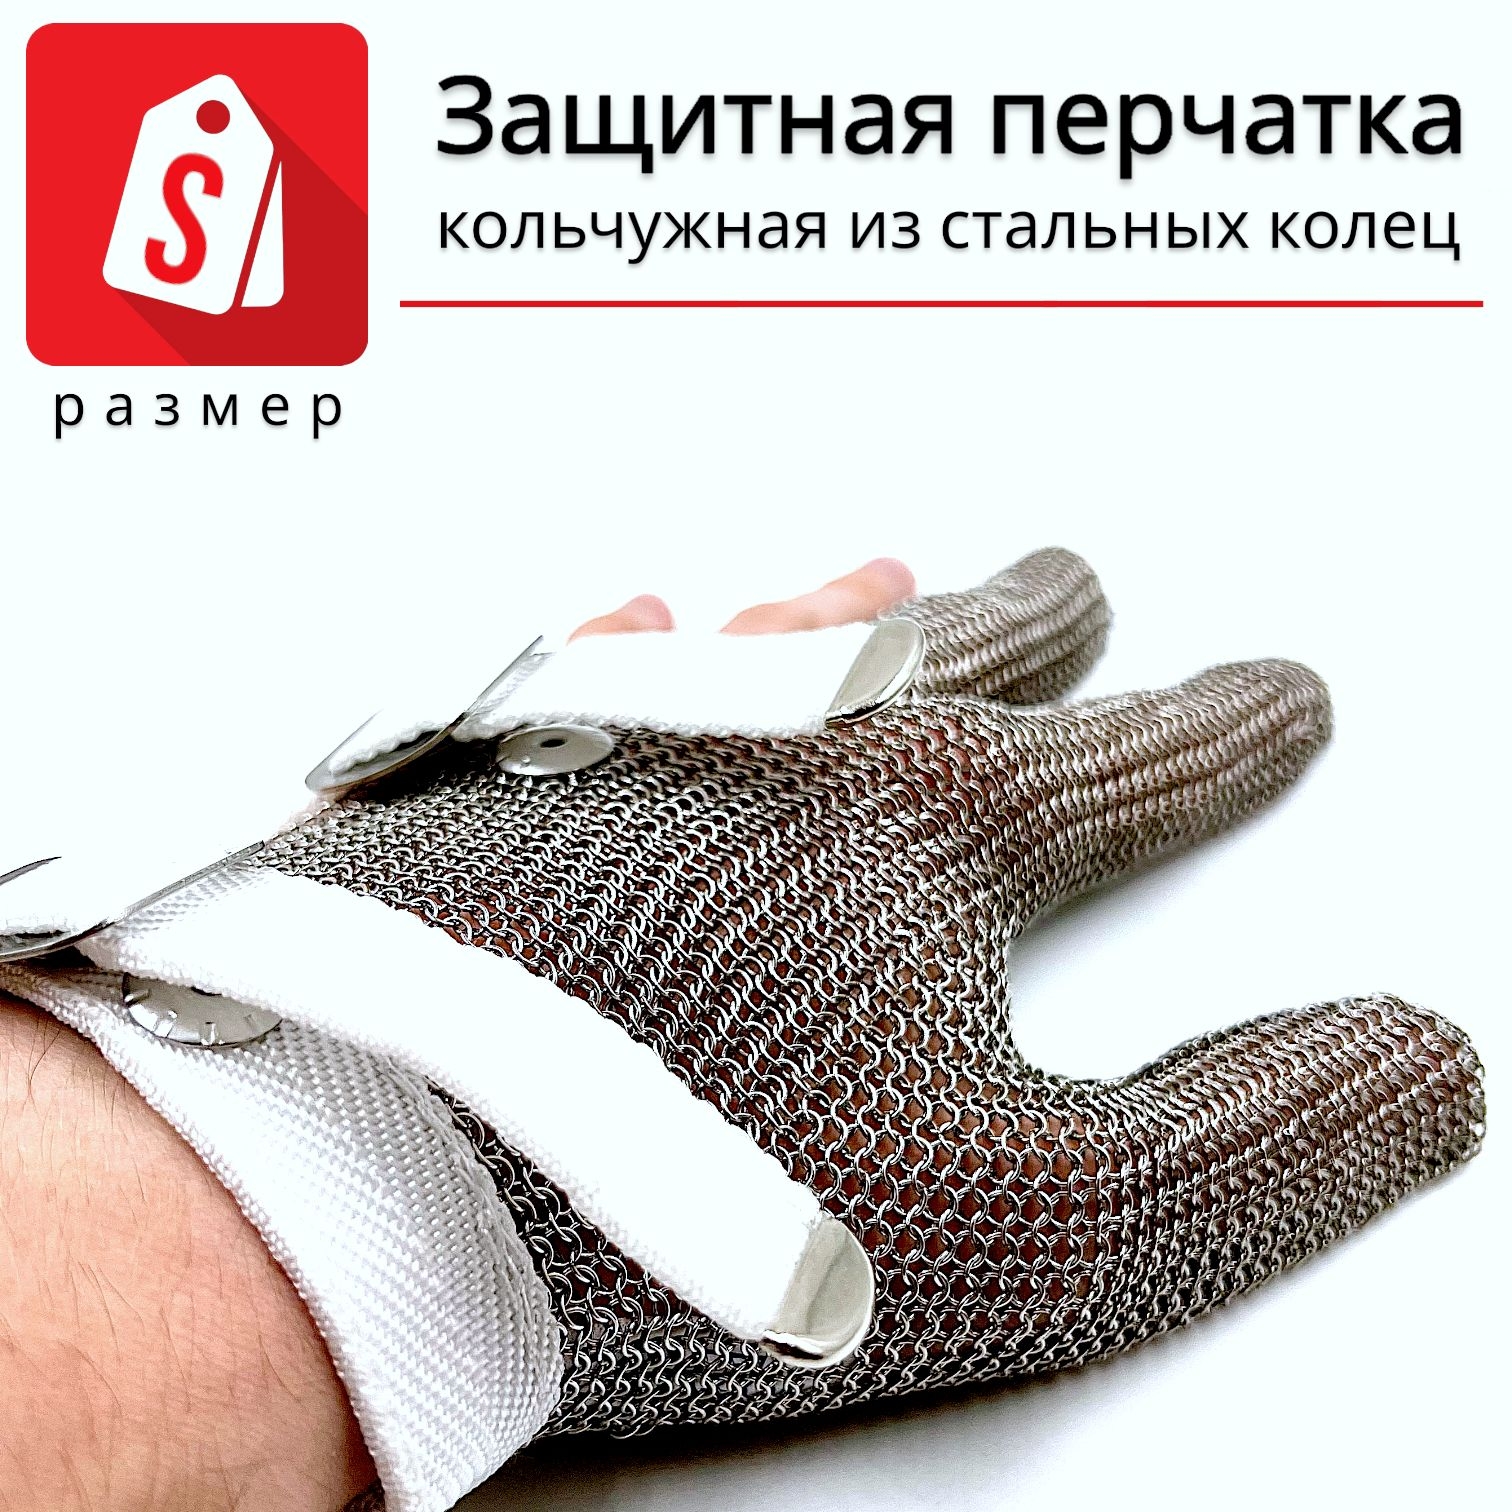 Трехпалая кольчужная перчатка (размер S) перчатка щетка для шерсти на правую руку с удлиненными зубчиками красная